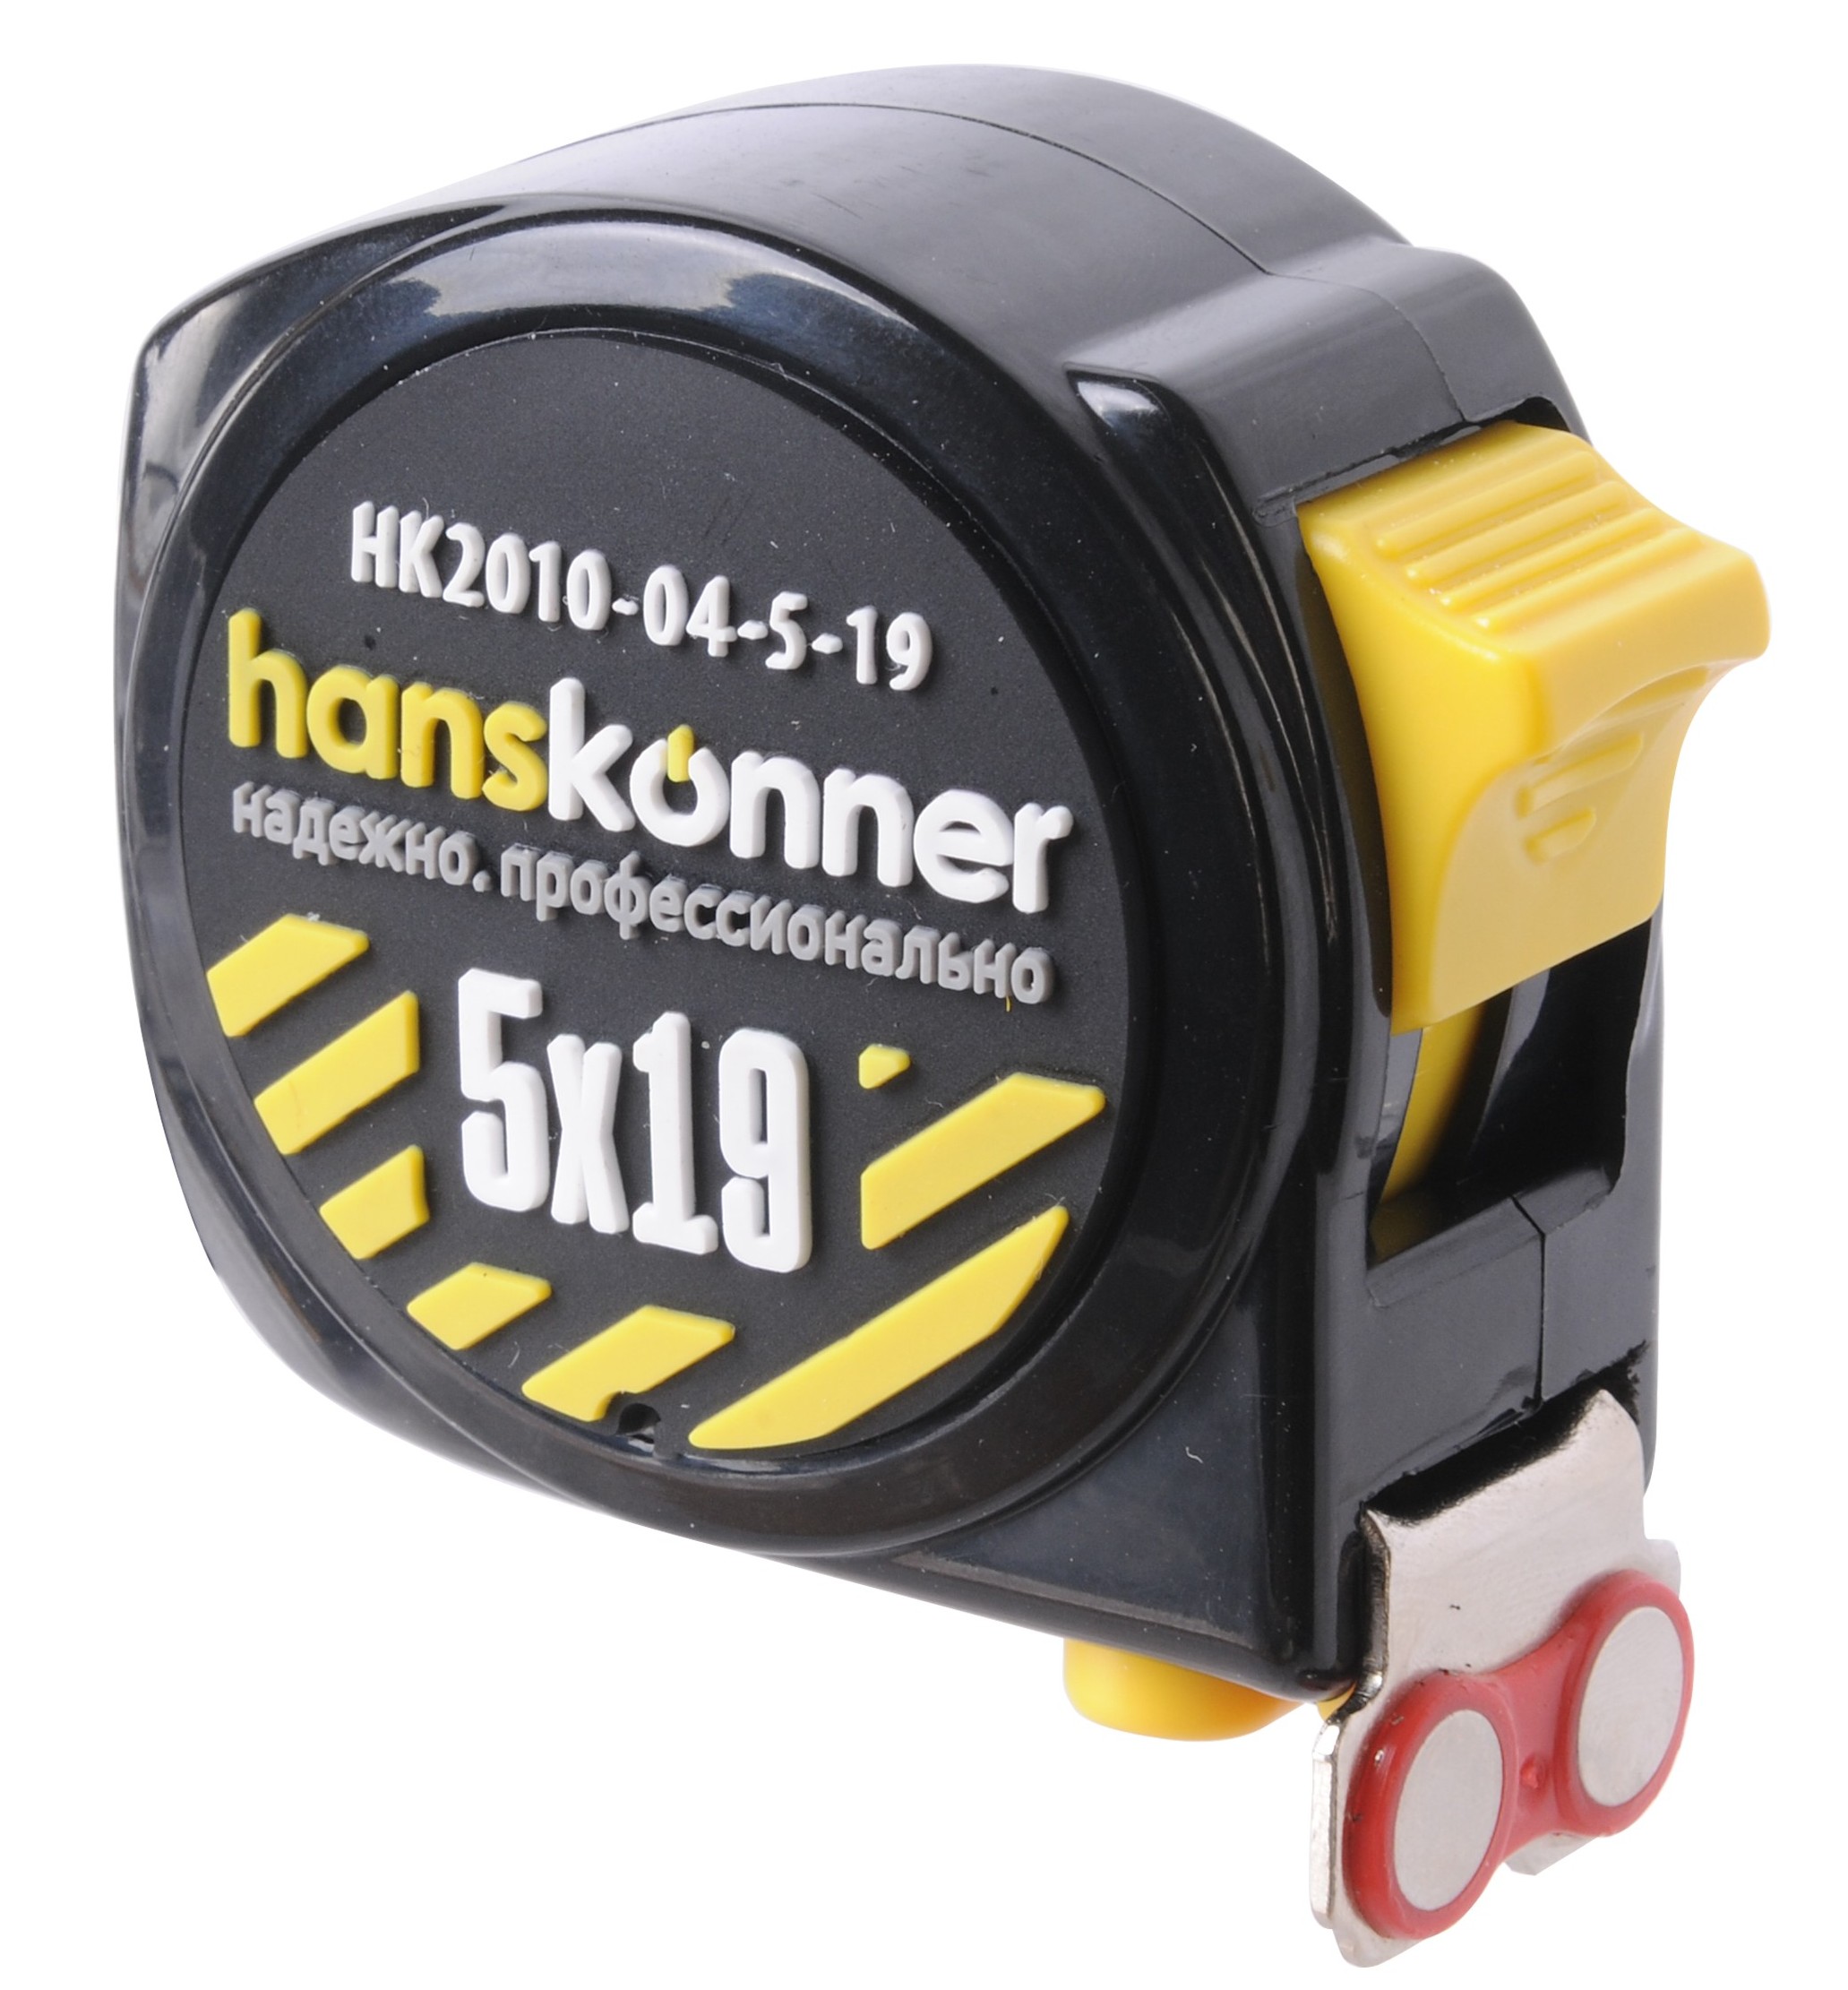 Рулетка Hanskonner HK2010-04-5-19 5мx19мм, 2 стопа, магнитный зацеп